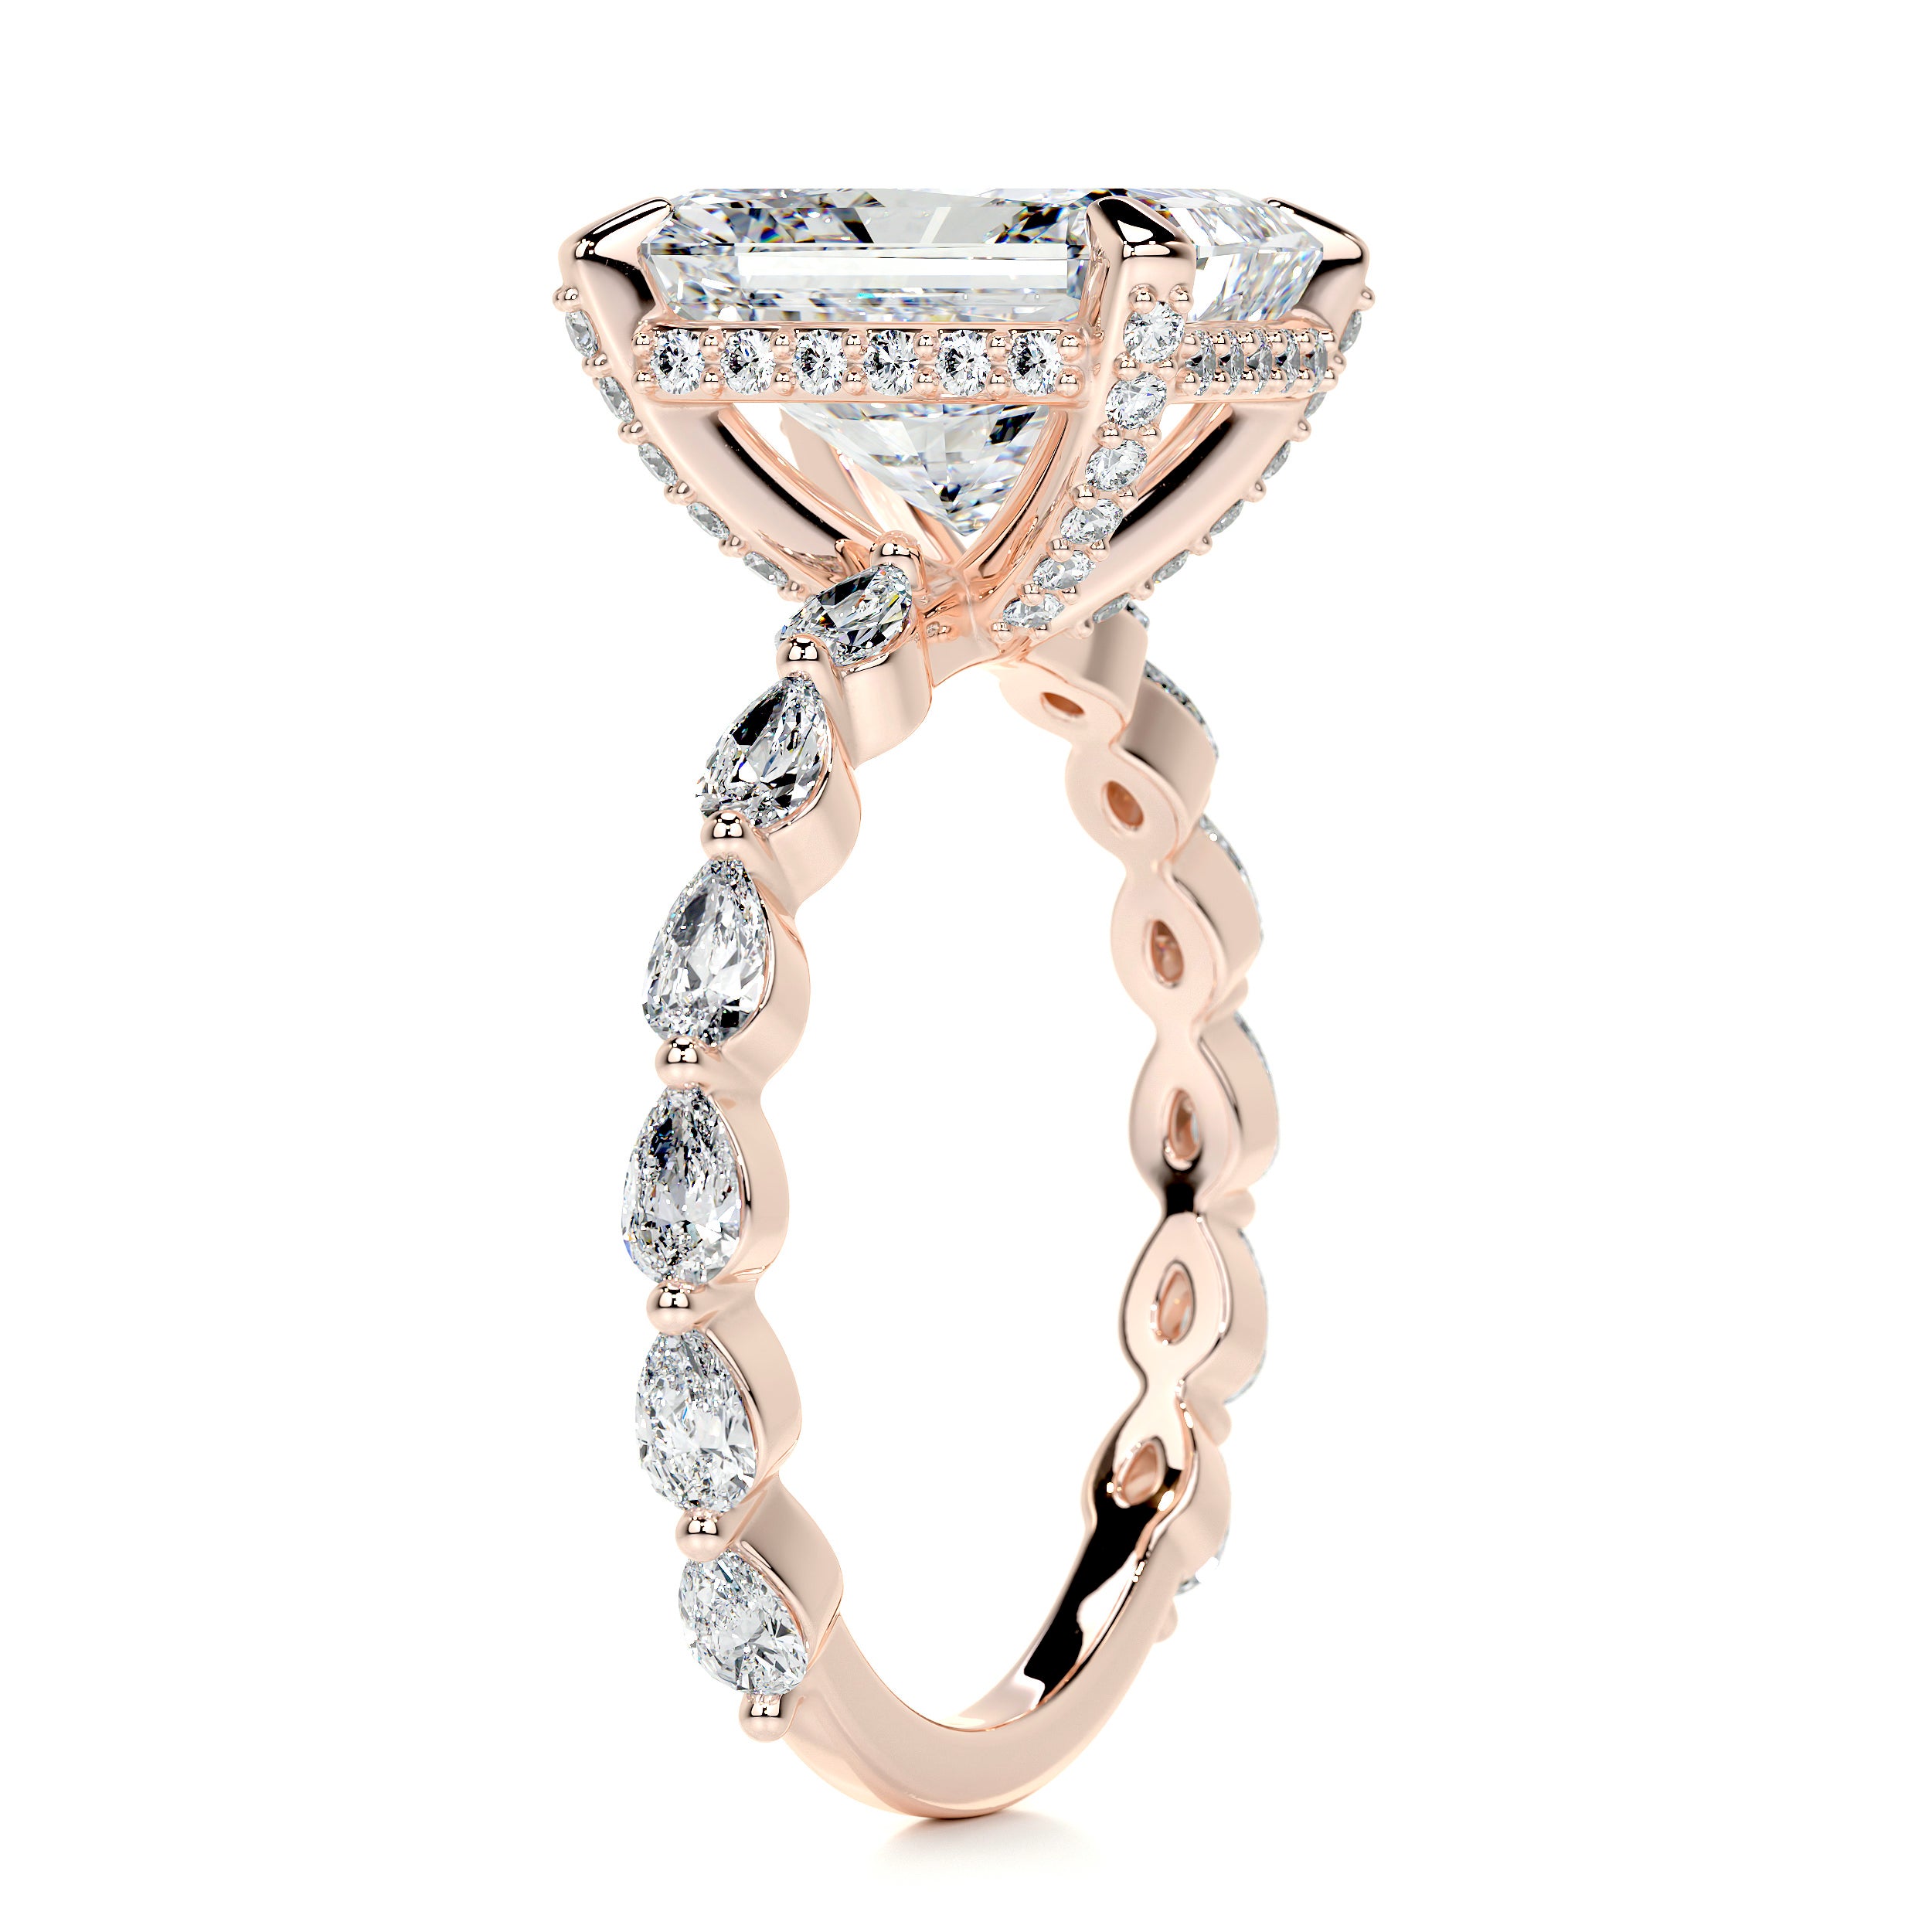 Robin Diamond Engagement Ring   (4.50 Carat) -14K Rose Gold